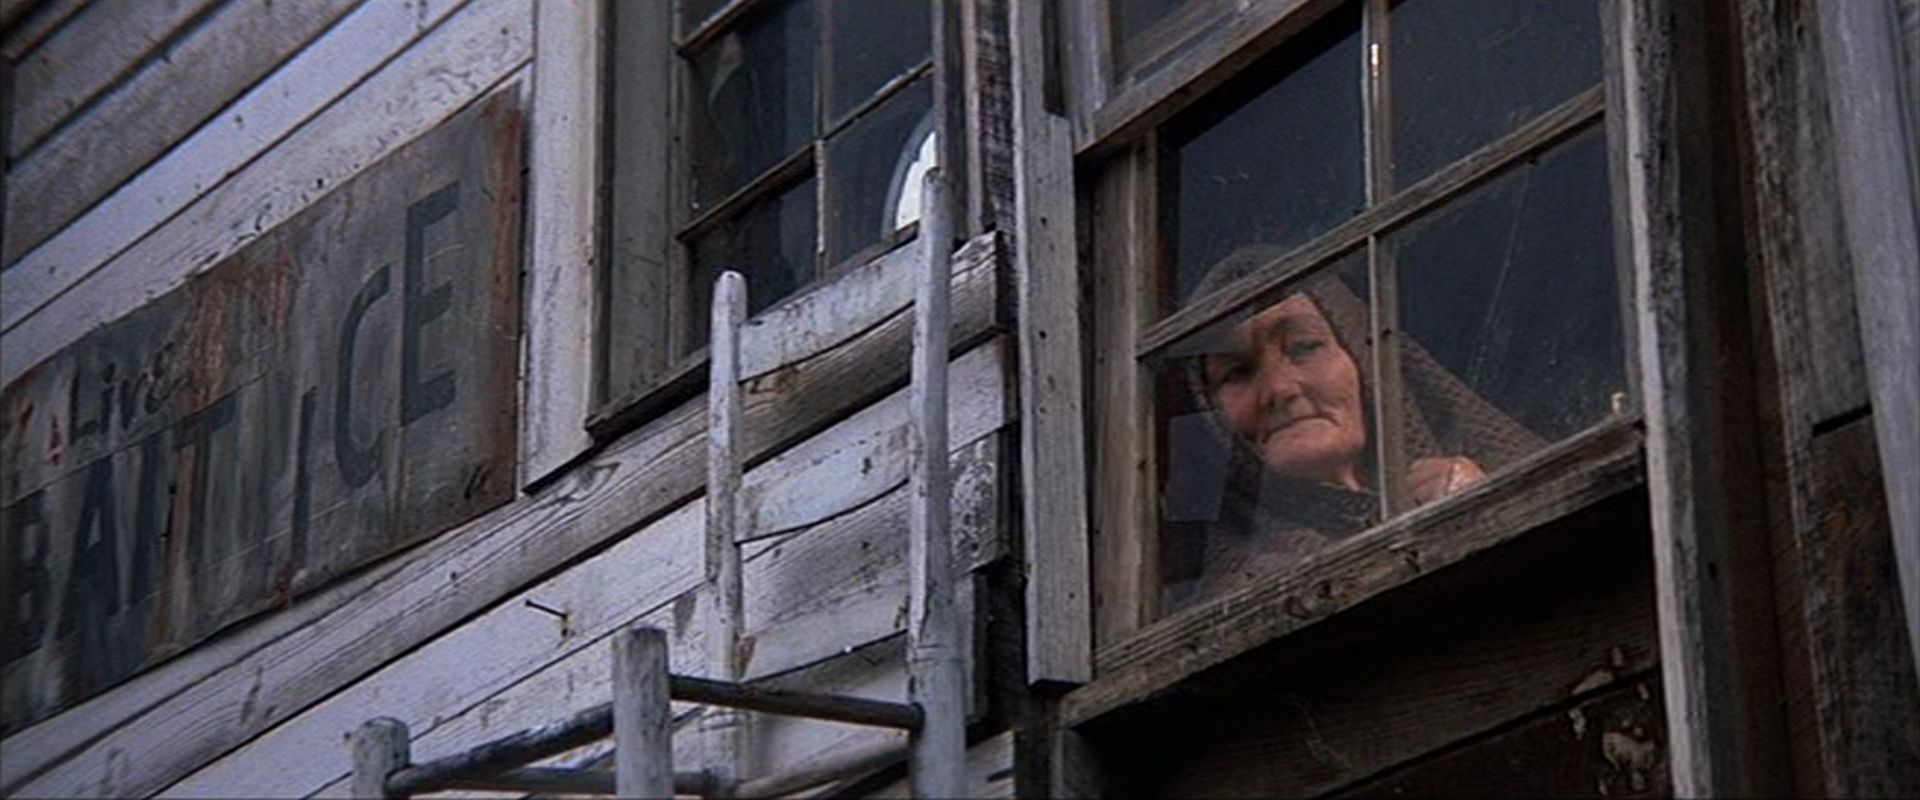 Eine alte Frau blickt aus dem Fenster eines alten Gebäudes aus Holzbrettern.